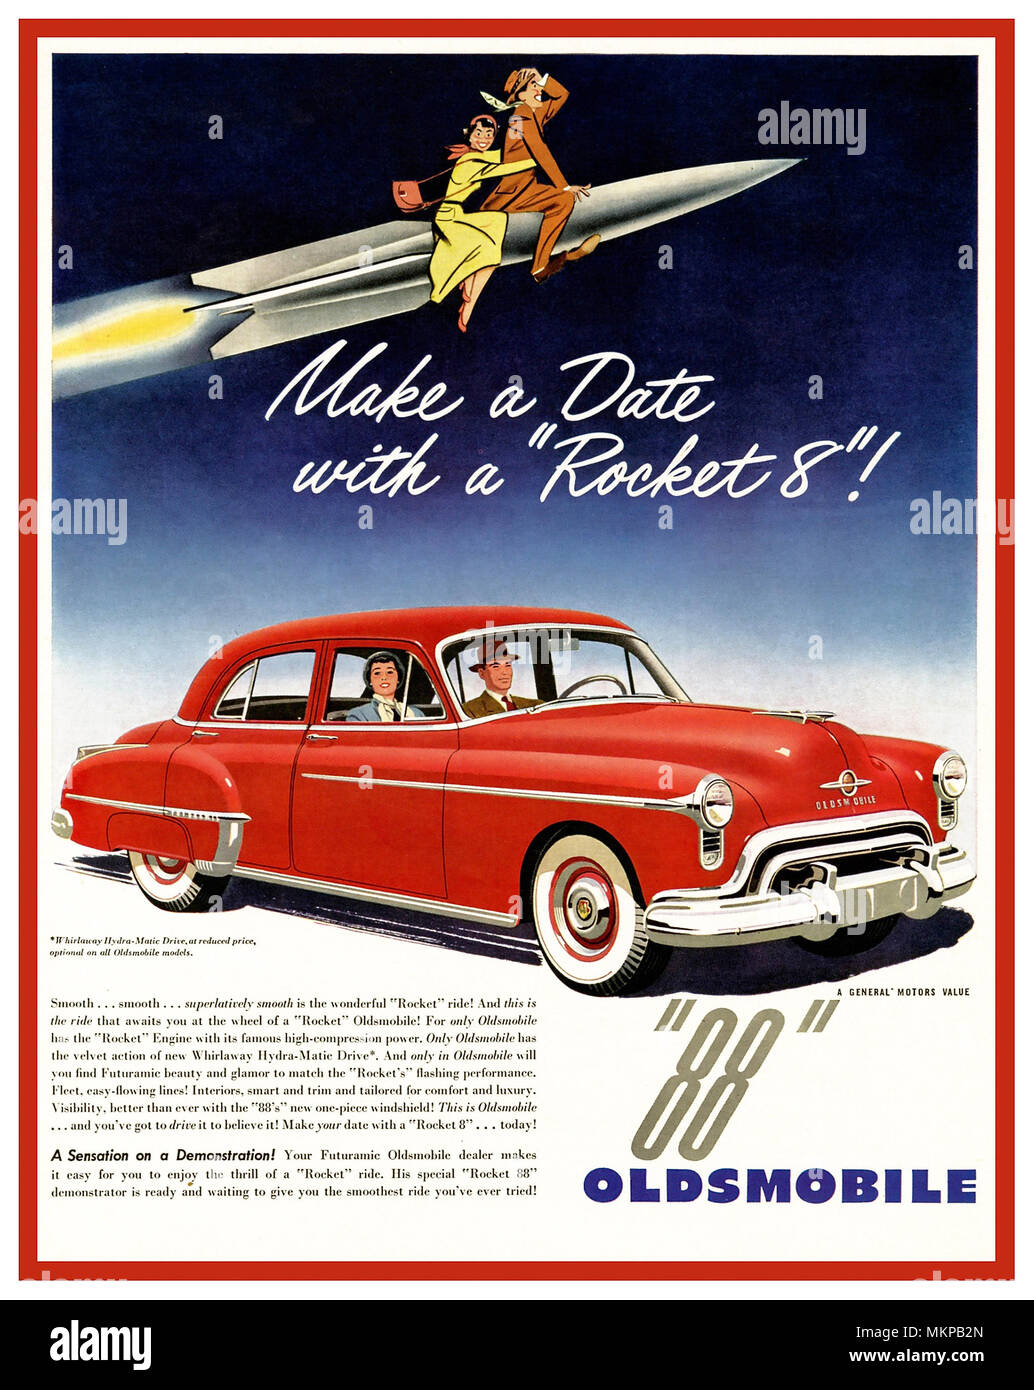 OLDSMOBILE Vintage 1949-1950er American Car-Werbung für das Oldsmobile 88 (bekannt als Rocket Eighty Acht) ein vollwertiges Auto, das von Oldsmobile in verschiedenen Formen von 1949 bis 1999 verkauft und hergestellt wurde 'Make a Date with a Rocket 8' ! Stockfoto